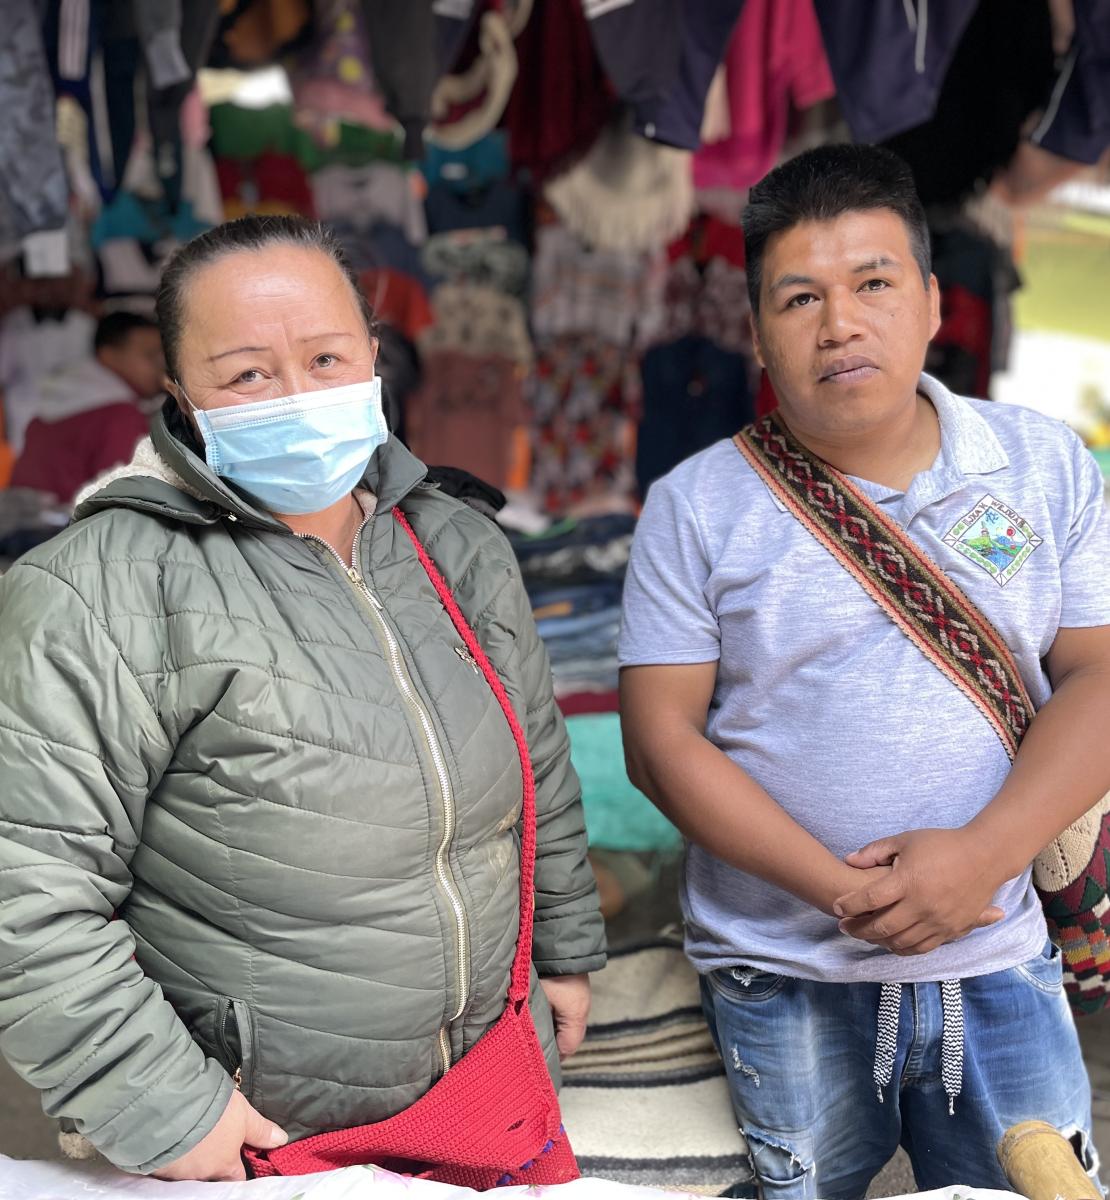 Una mujer con mascarilla y un hombre se encuentran uno al lado del otro en un mercado callejero.